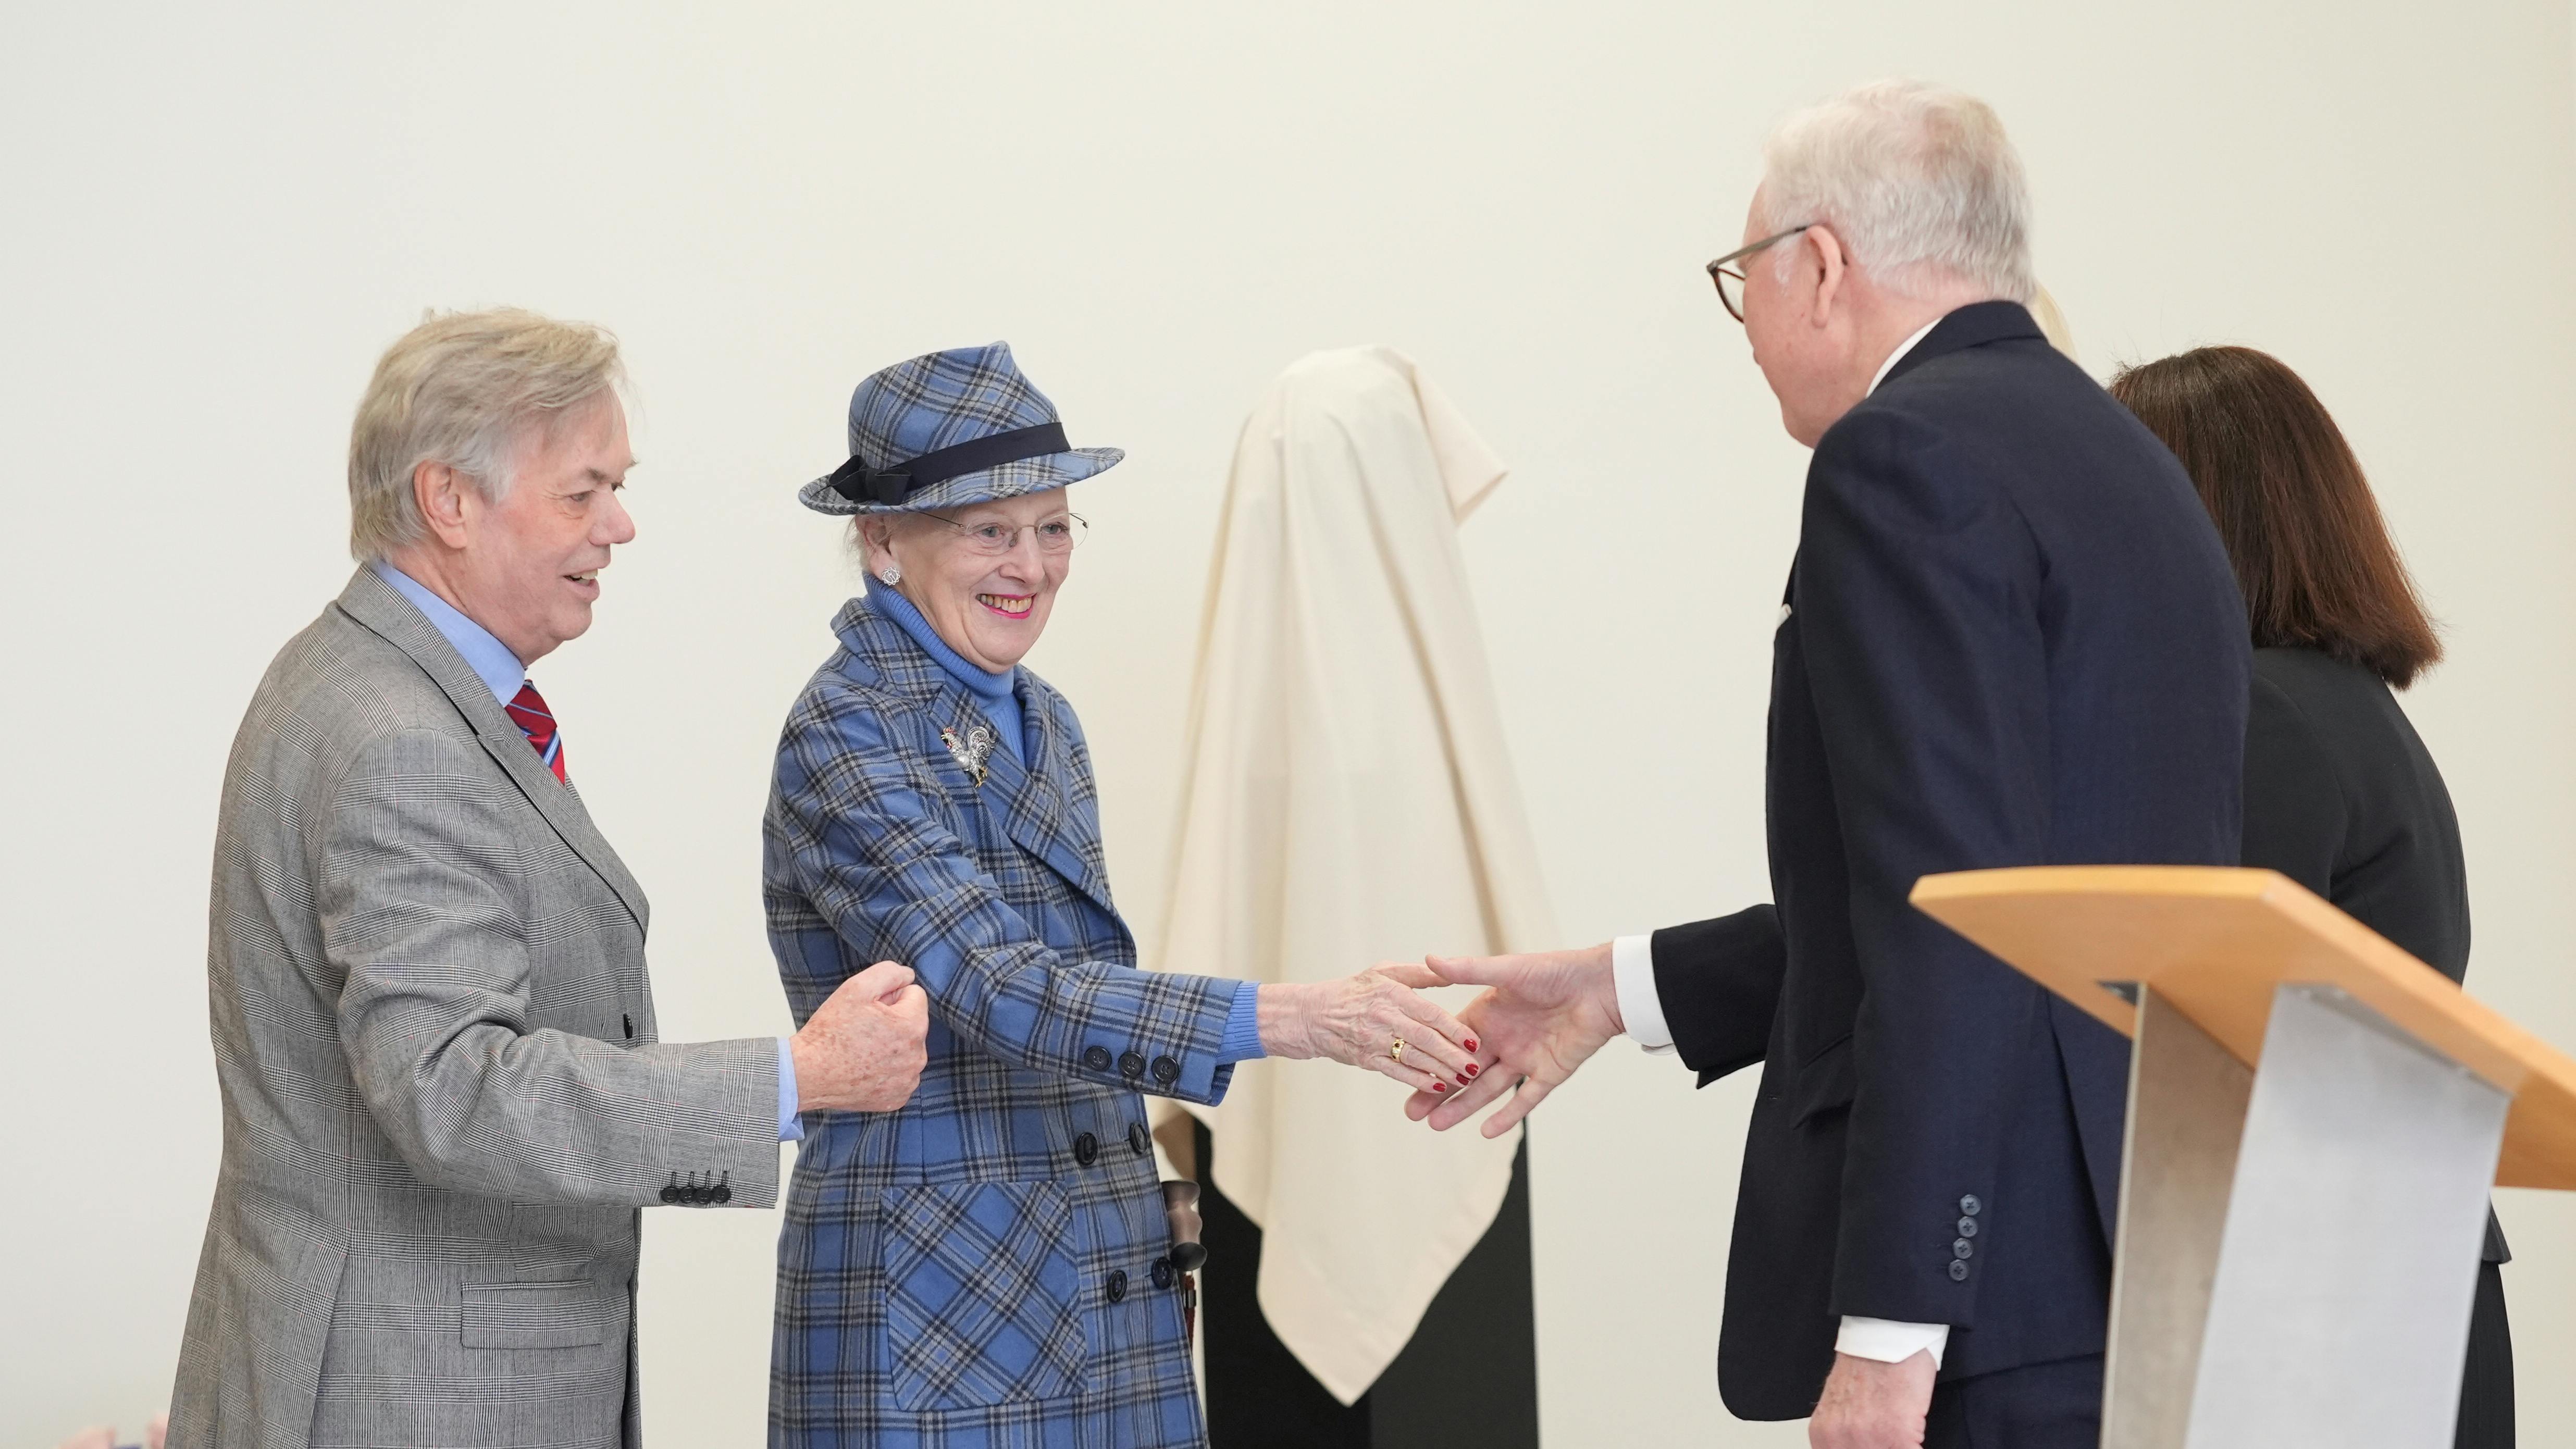 Dronning Margrethe afslører en buste af prins Henrik under indvielsen af den nye Prins Henriks Skole på Frederiksberg.